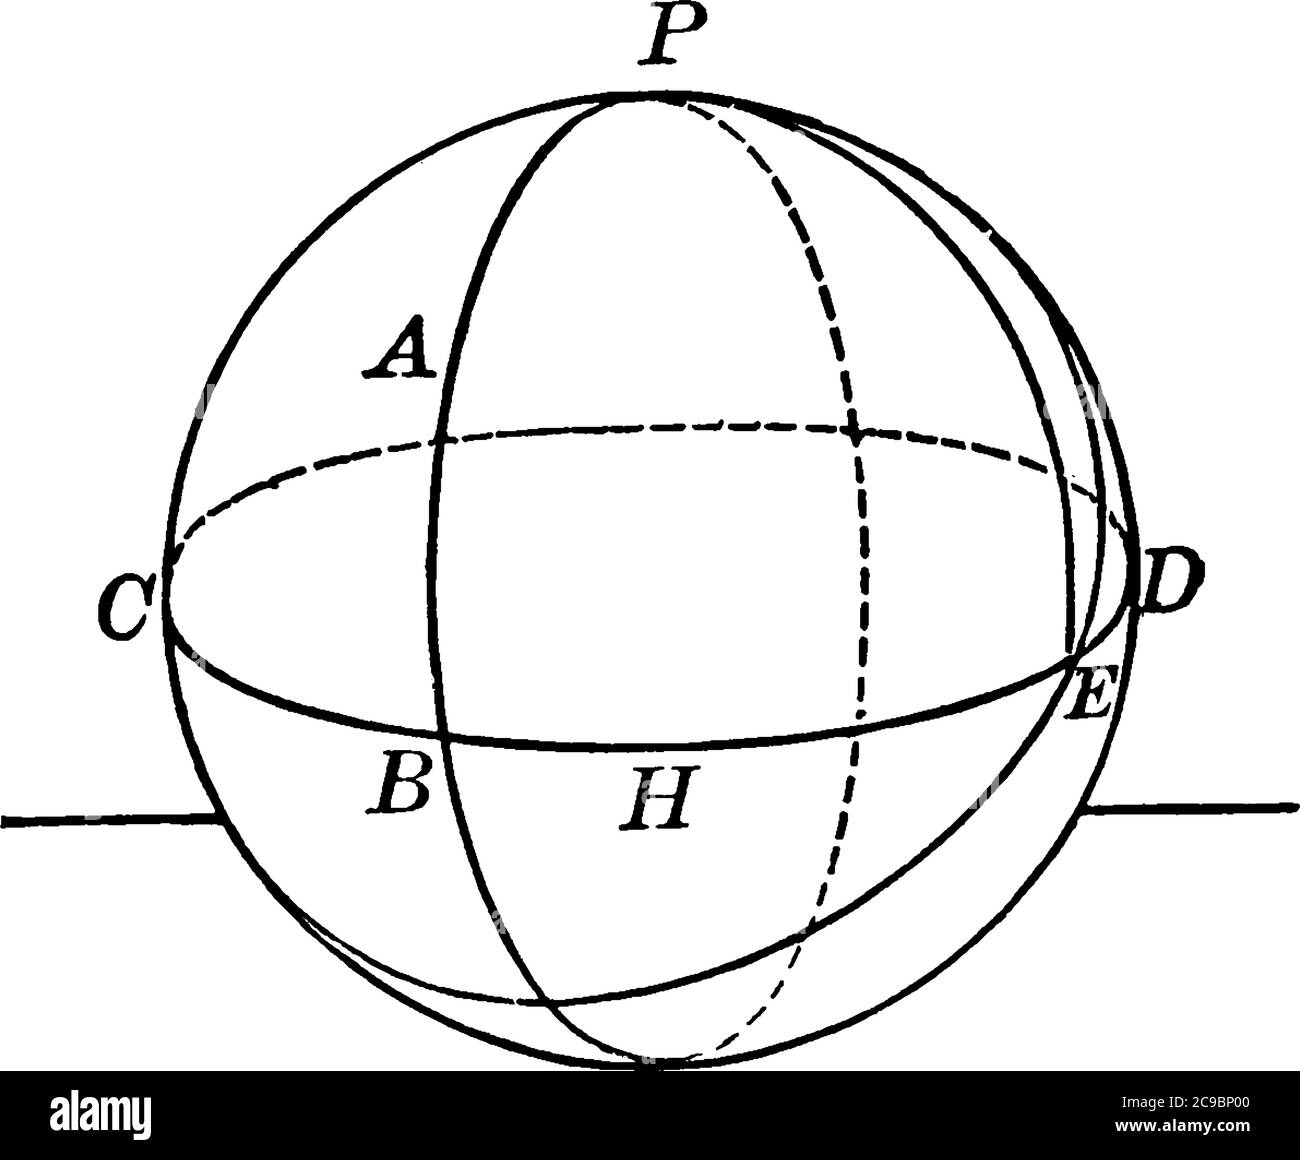 Kugel mit zwei Kreisbögen und Sektoren beschriftet, vintage Linie Zeichnung oder Gravur Illustration. Stock Vektor